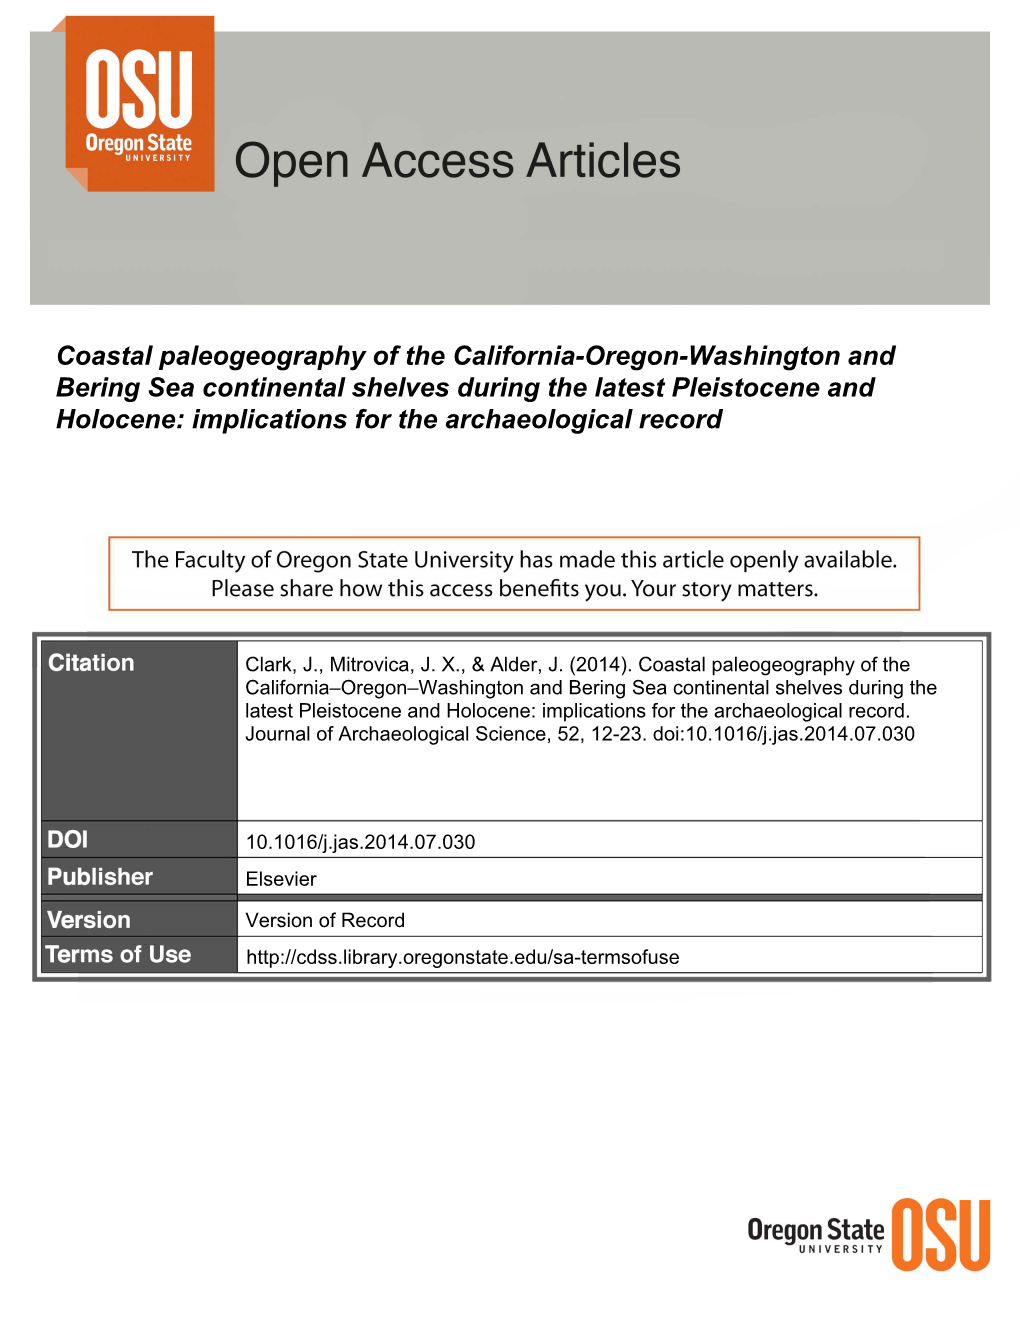 Coastal Paleogeography of the California-Oregon-Washington And